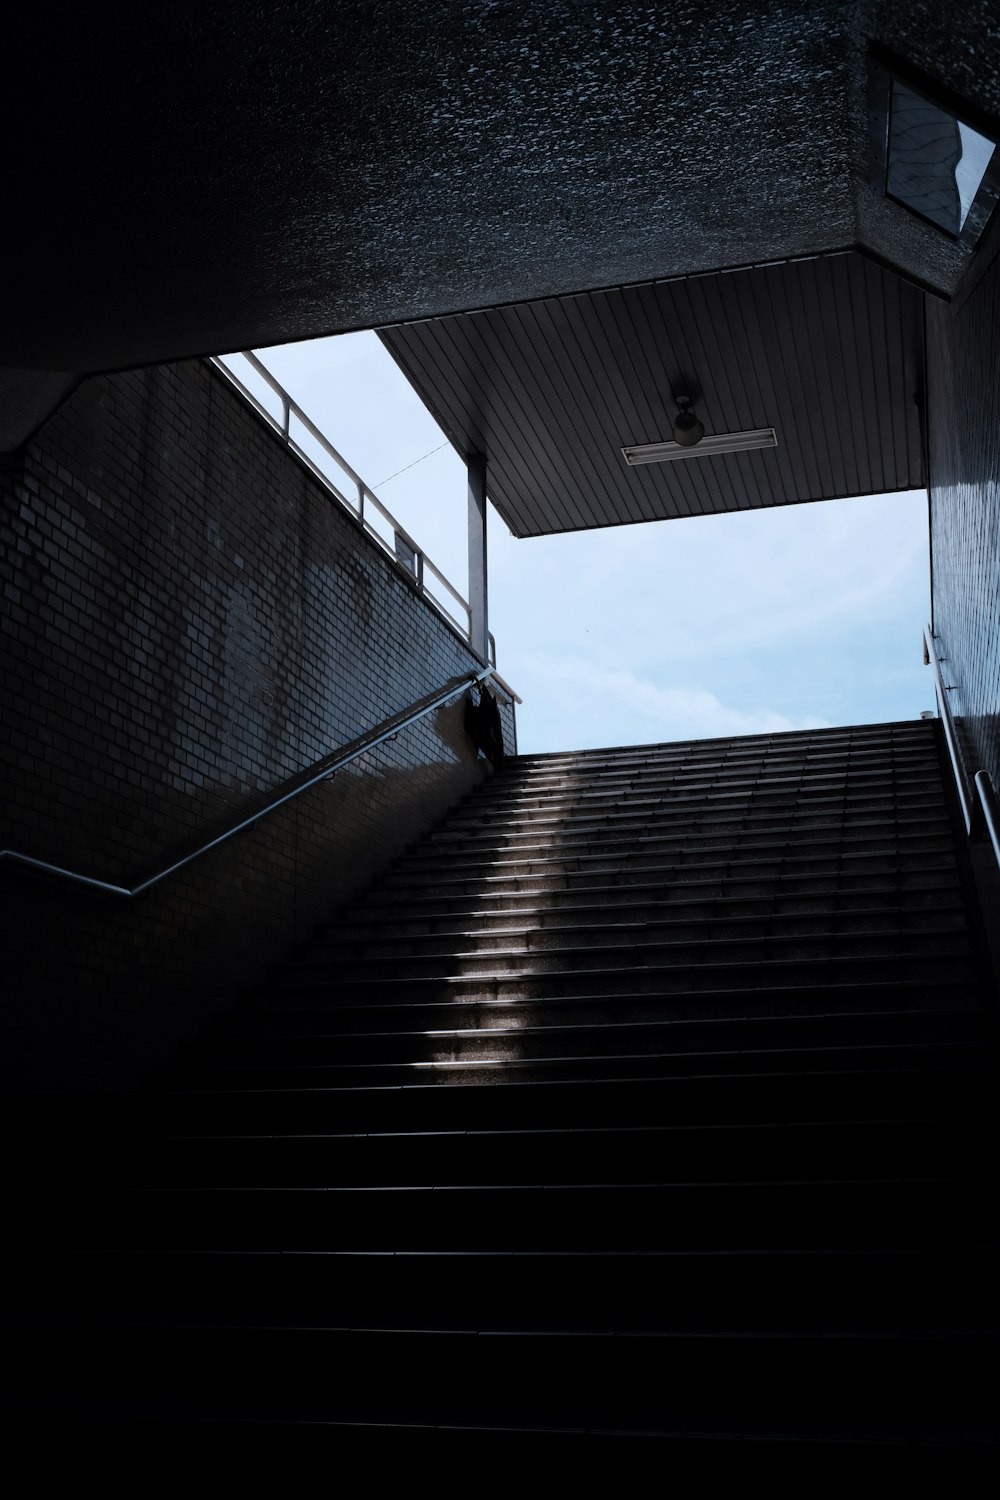 Escaliers vides pendant la journée